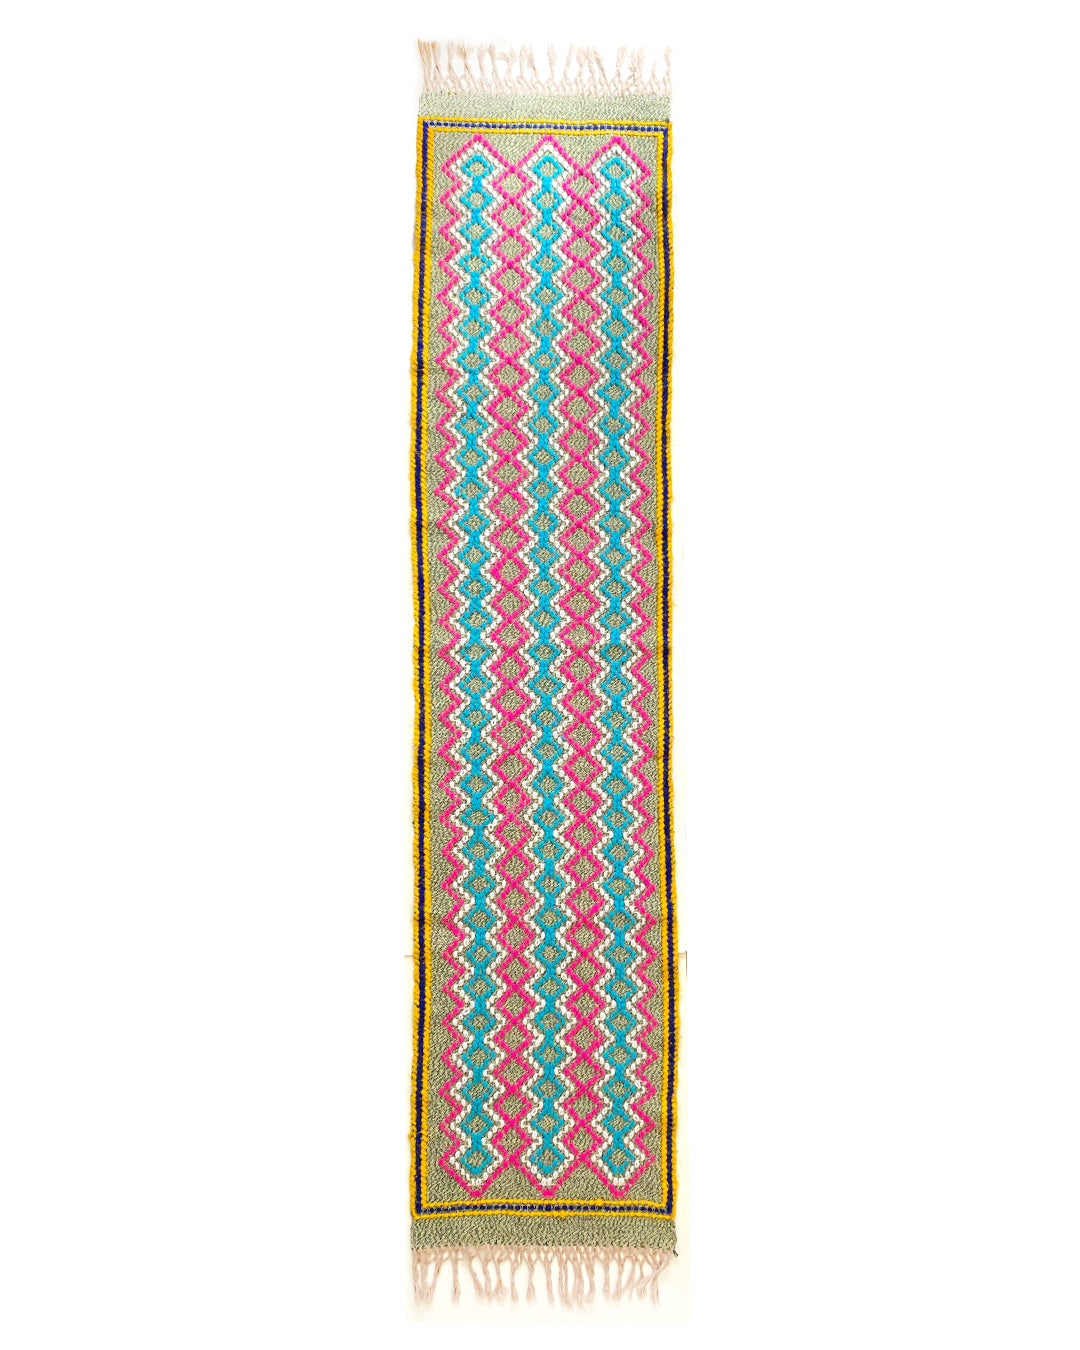 Caminho de mesa / peseira azul, rosa e amarelo - tear manual